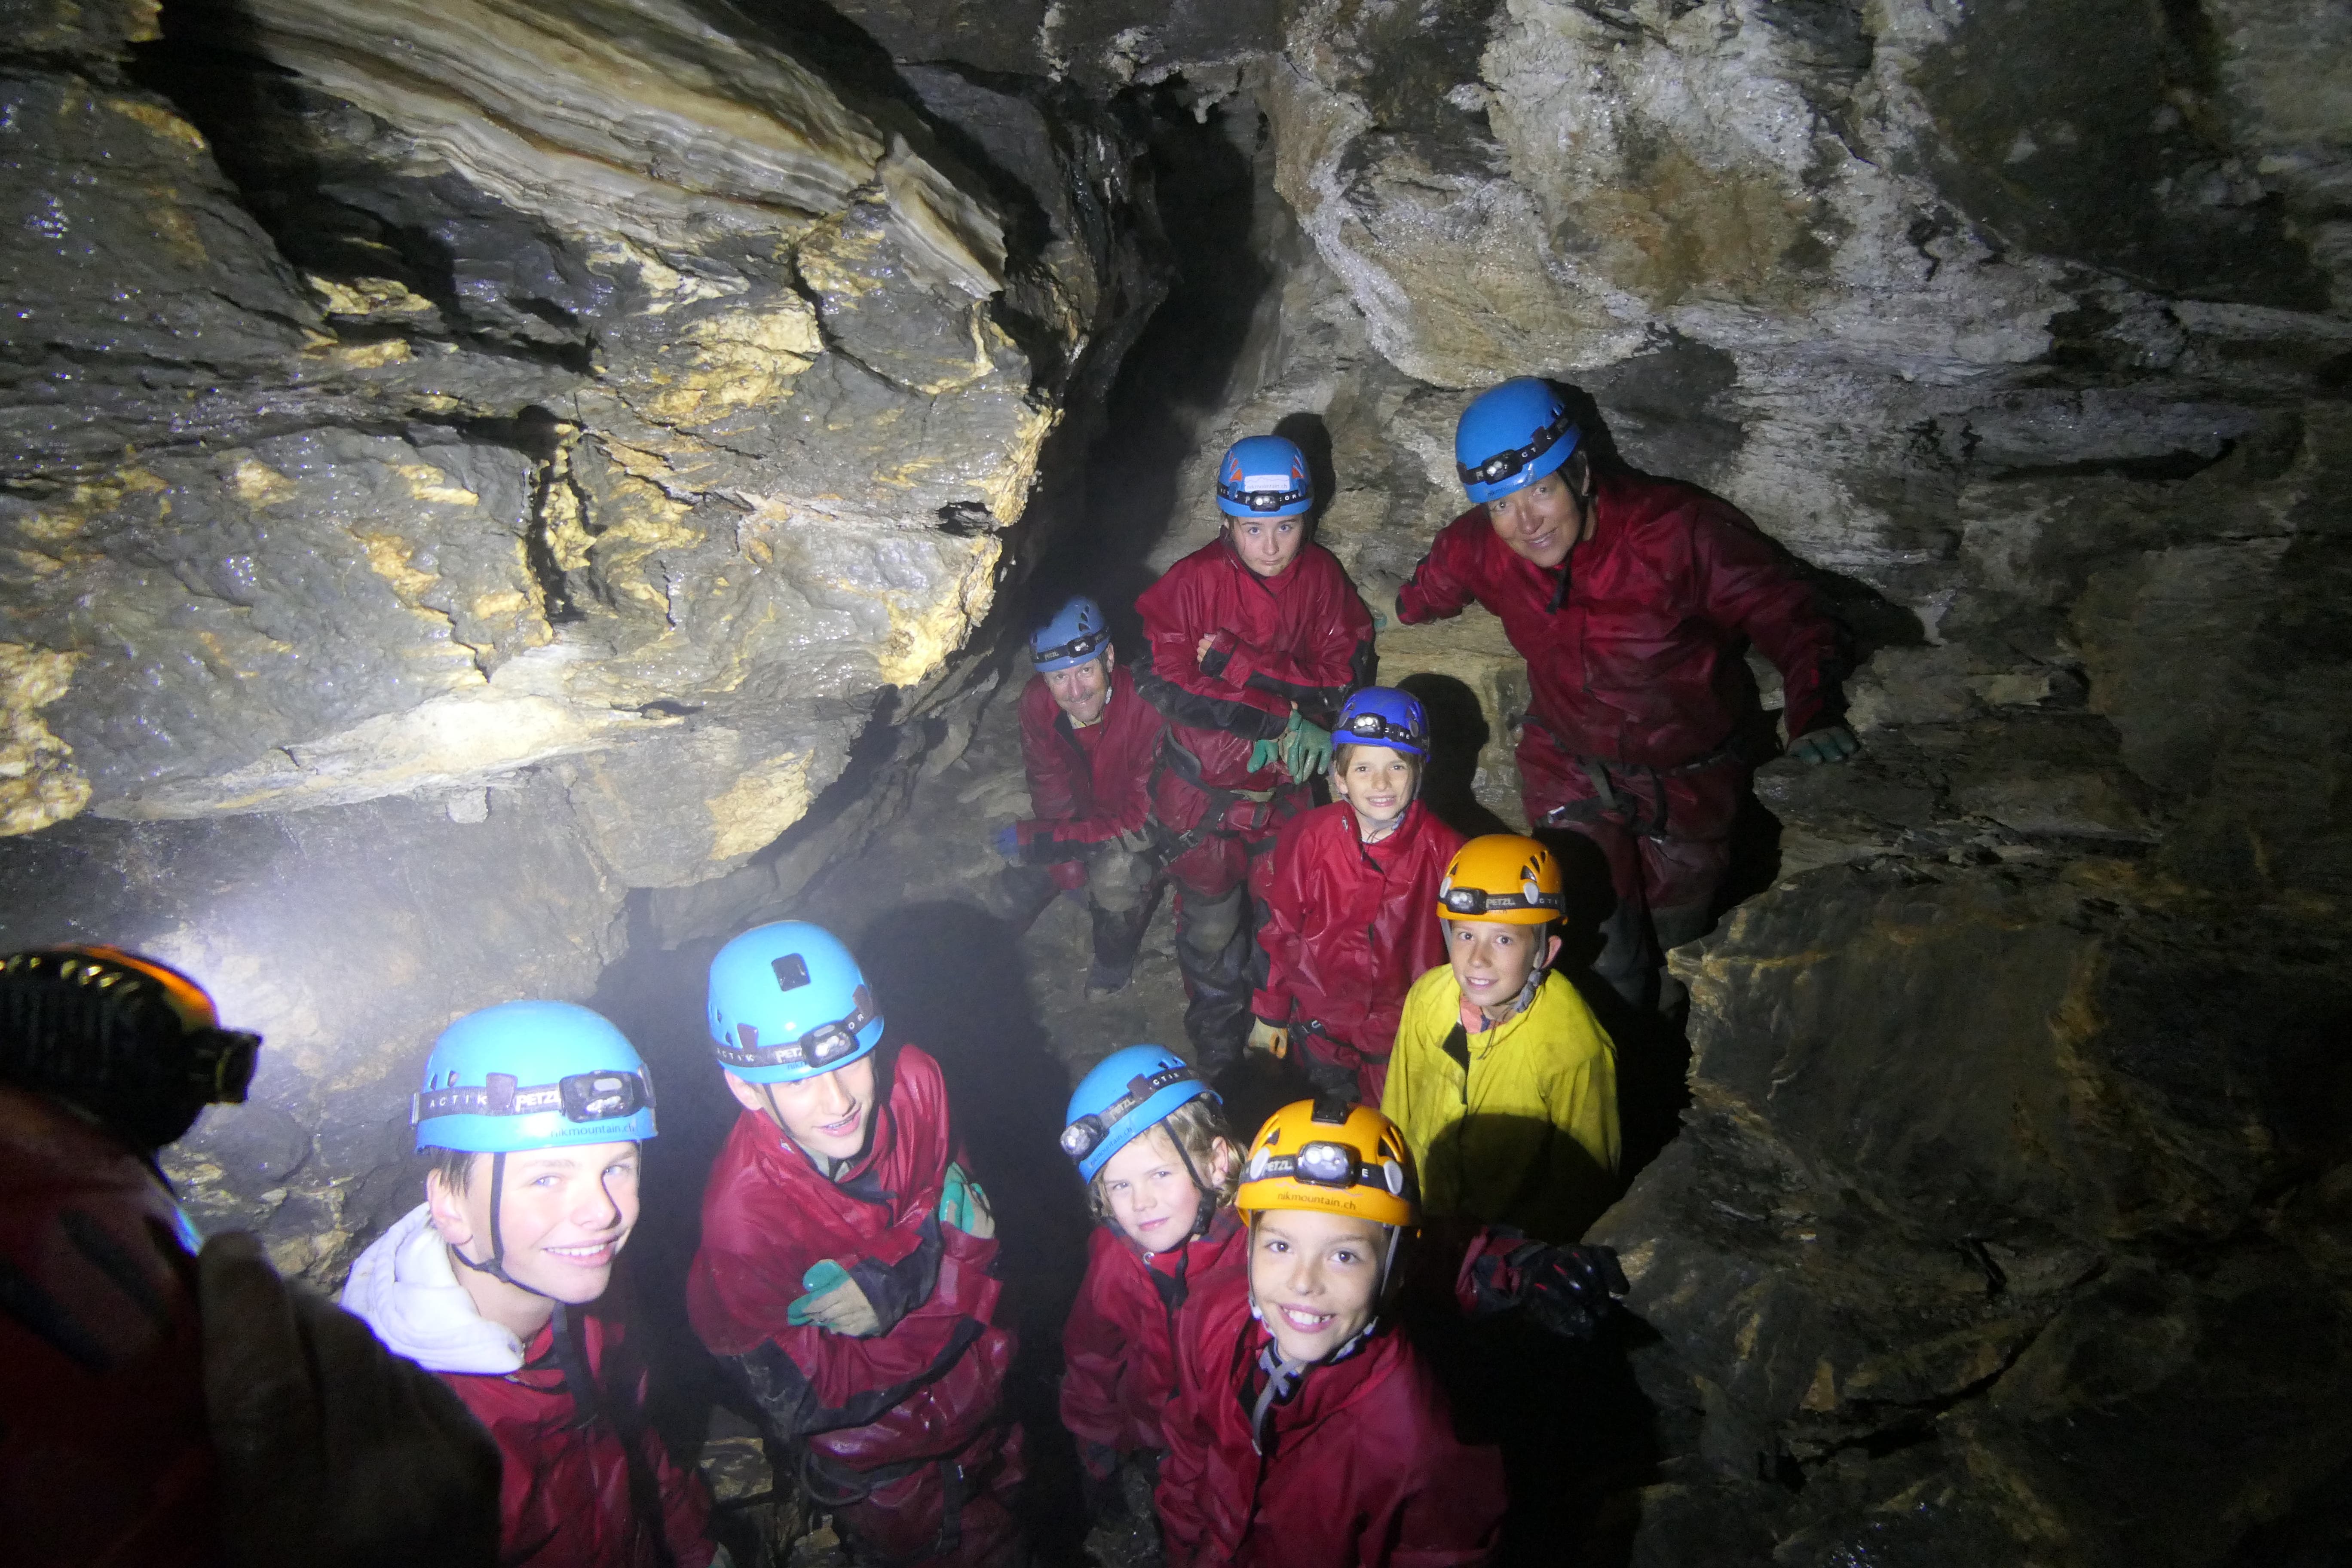 Gruppenfoto mitten in der Höhle – genial! (Bild: Zéline Odermatt, Melchsee-Frutt, 7. August 2019)